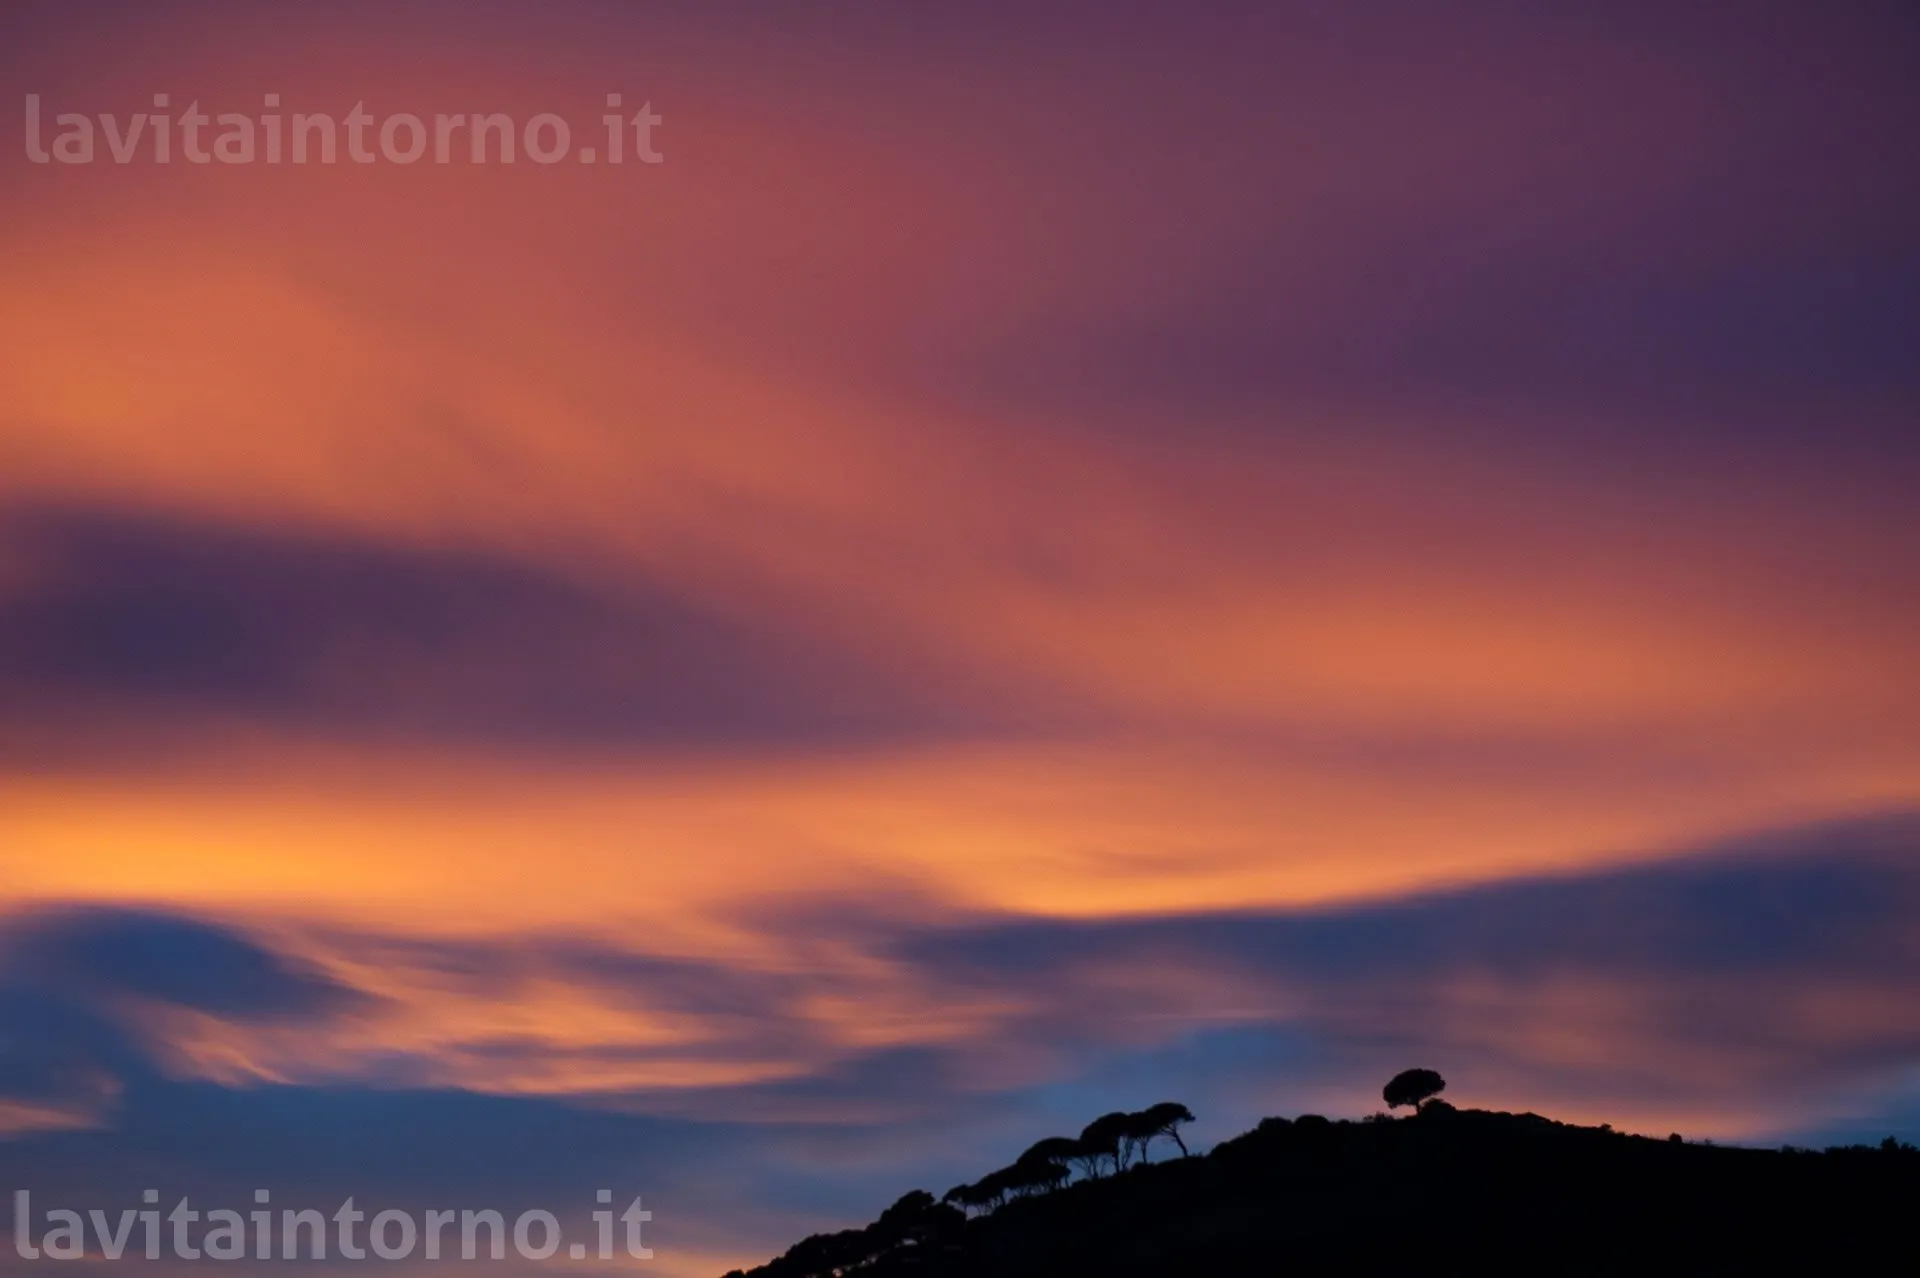 tramonto a Porto Azzurro
D700
Nikkor 24-70 F/2.8G AF-S